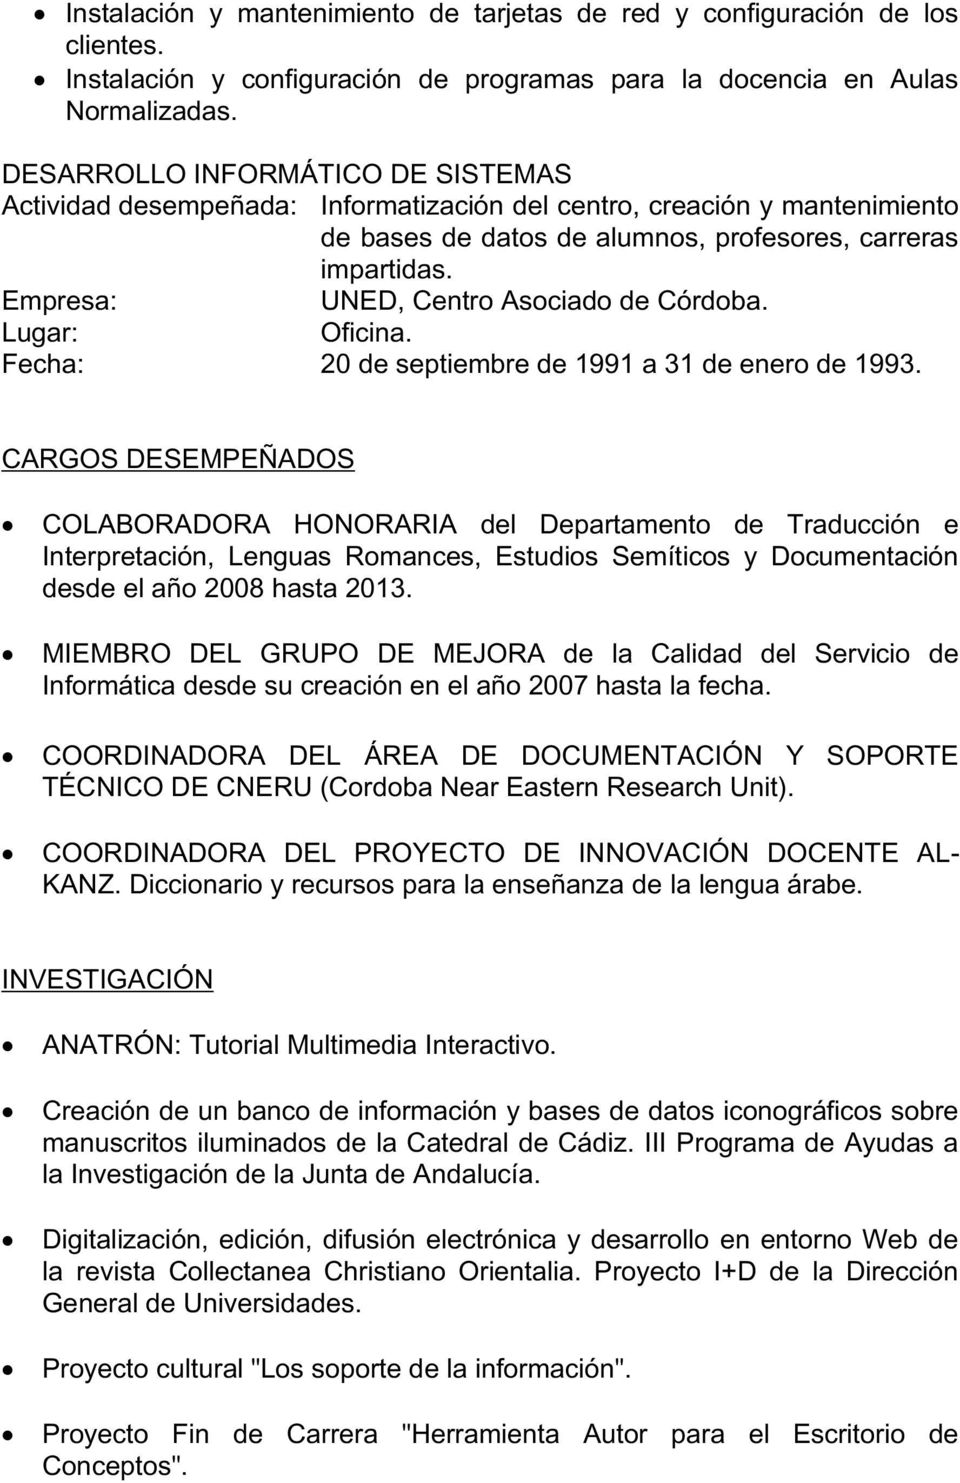 UNED, Centro Asociado de Córdoba. Oficina. Fecha: 20 de septiembre de 1991 a 31 de enero de 1993.